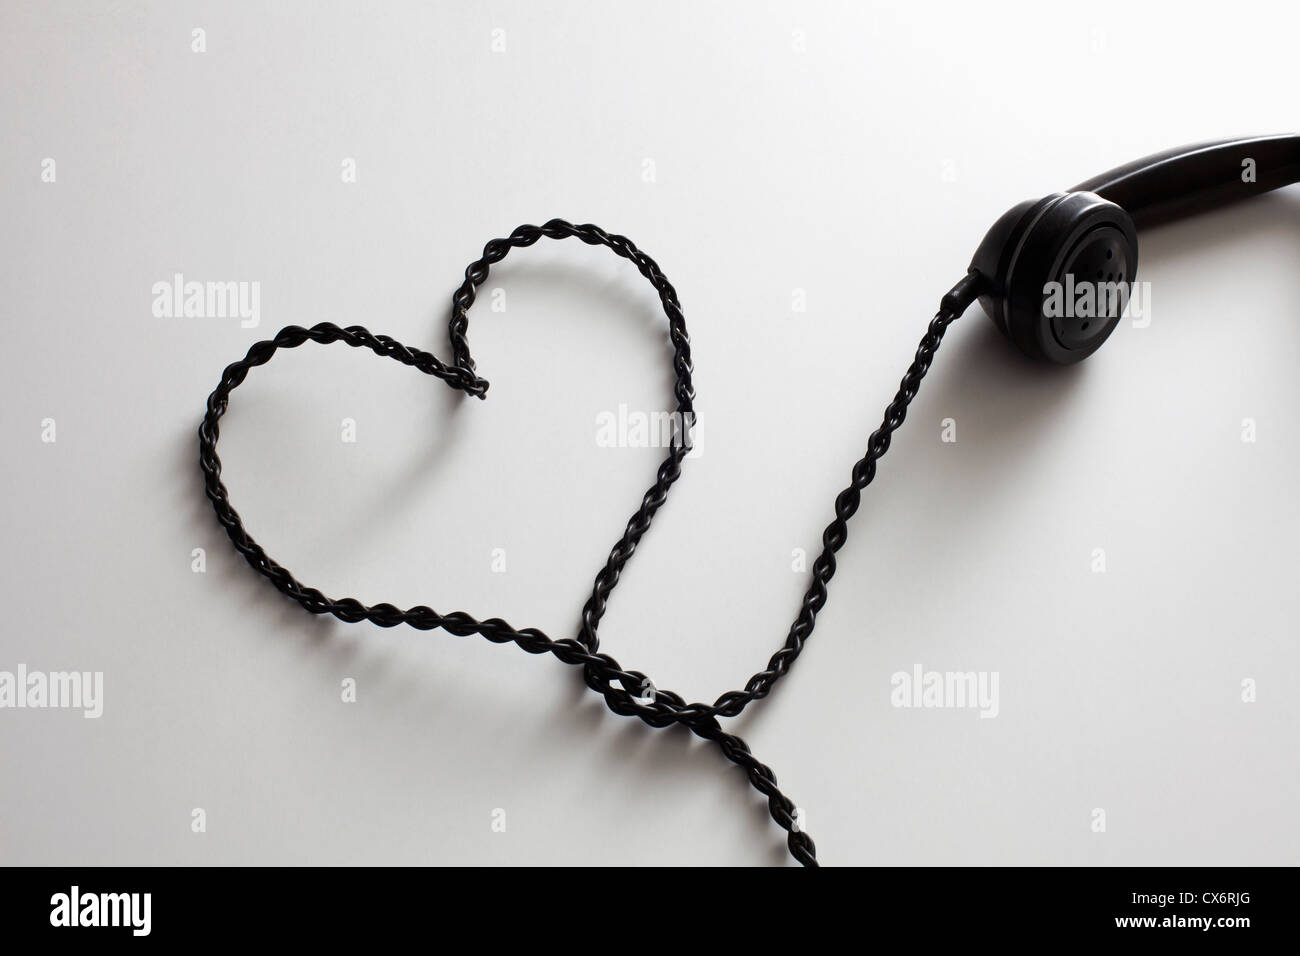 Eine altmodische Telefonkabel, angeordnet in der Form eines Herzens Stockfoto